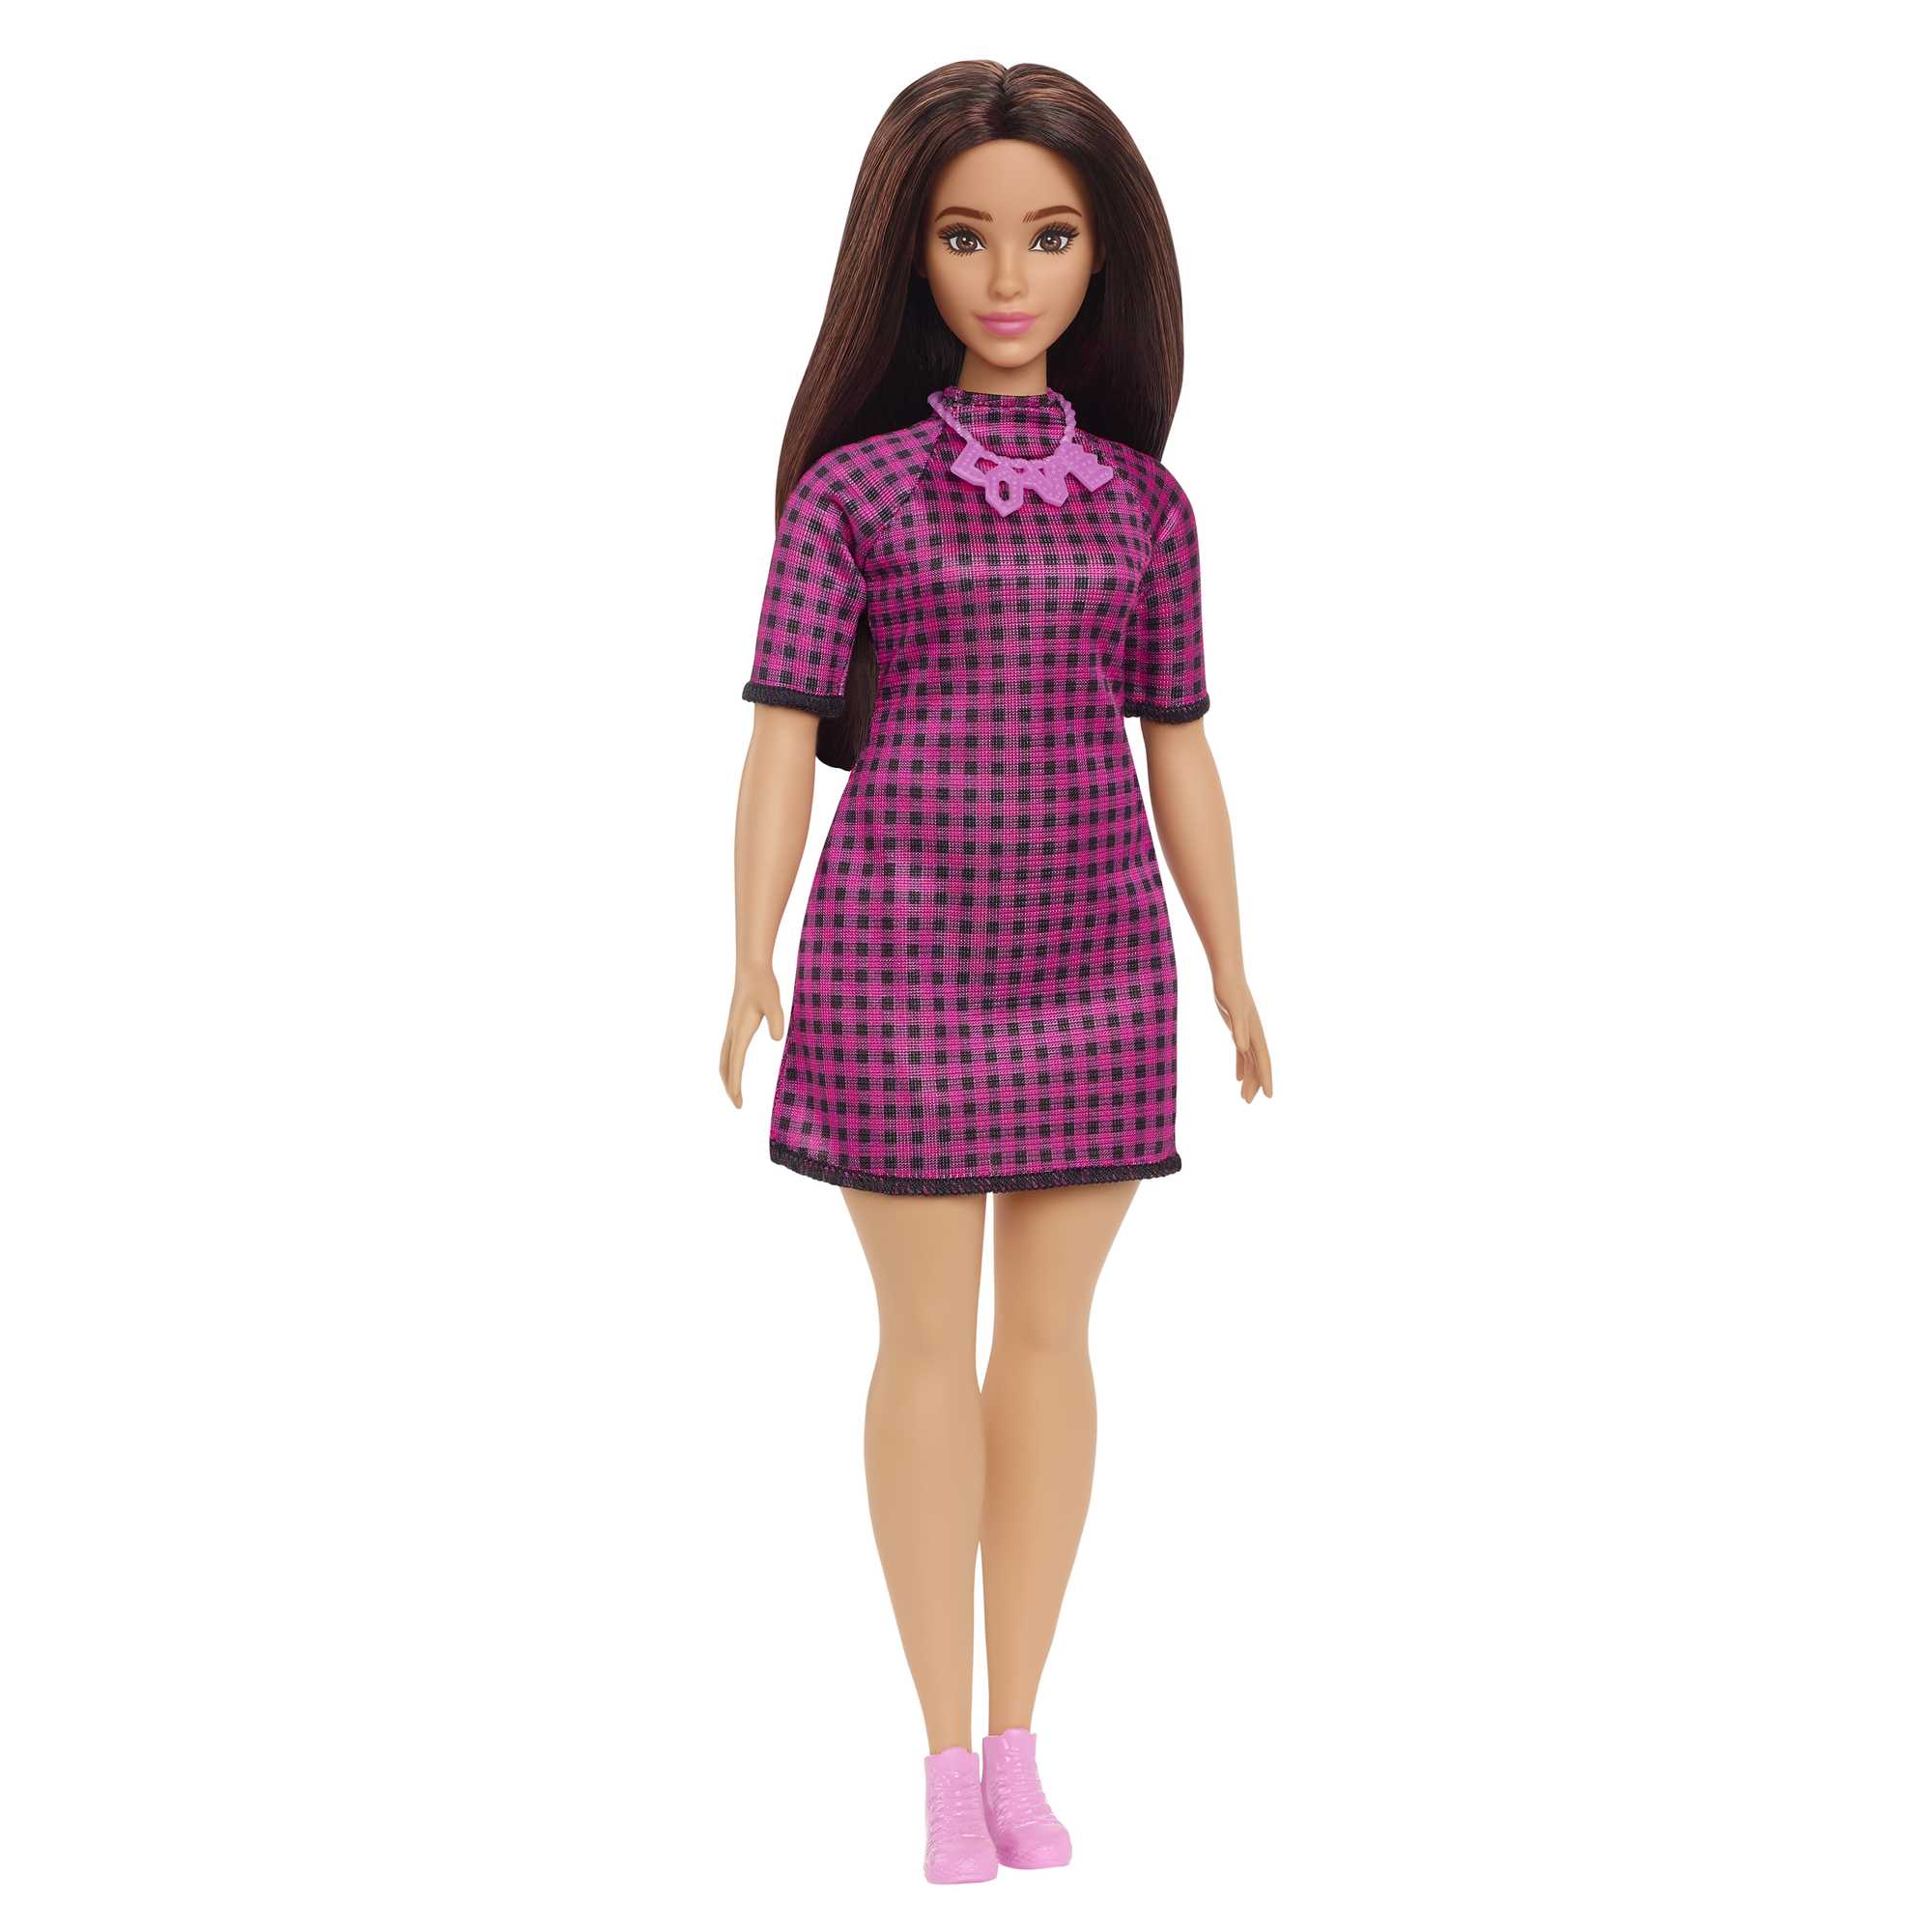 Кукла Mattel Barbie с длинными волосами брюнетка HBV20 кукла barbie barbiestyle 4 стильная с каштановыми волосами